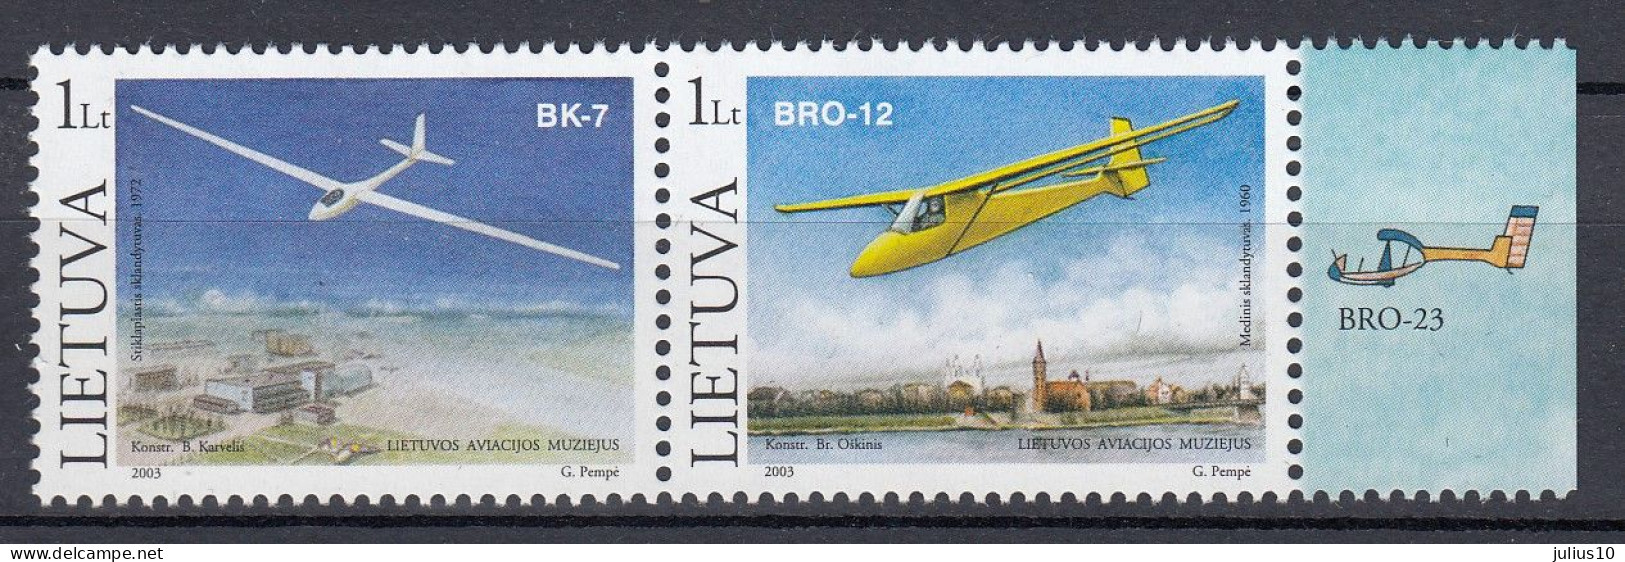 LITHUANIA 2003 Airplanes MNH(**) Mi 833-834 #Lt1011 - Lituanie